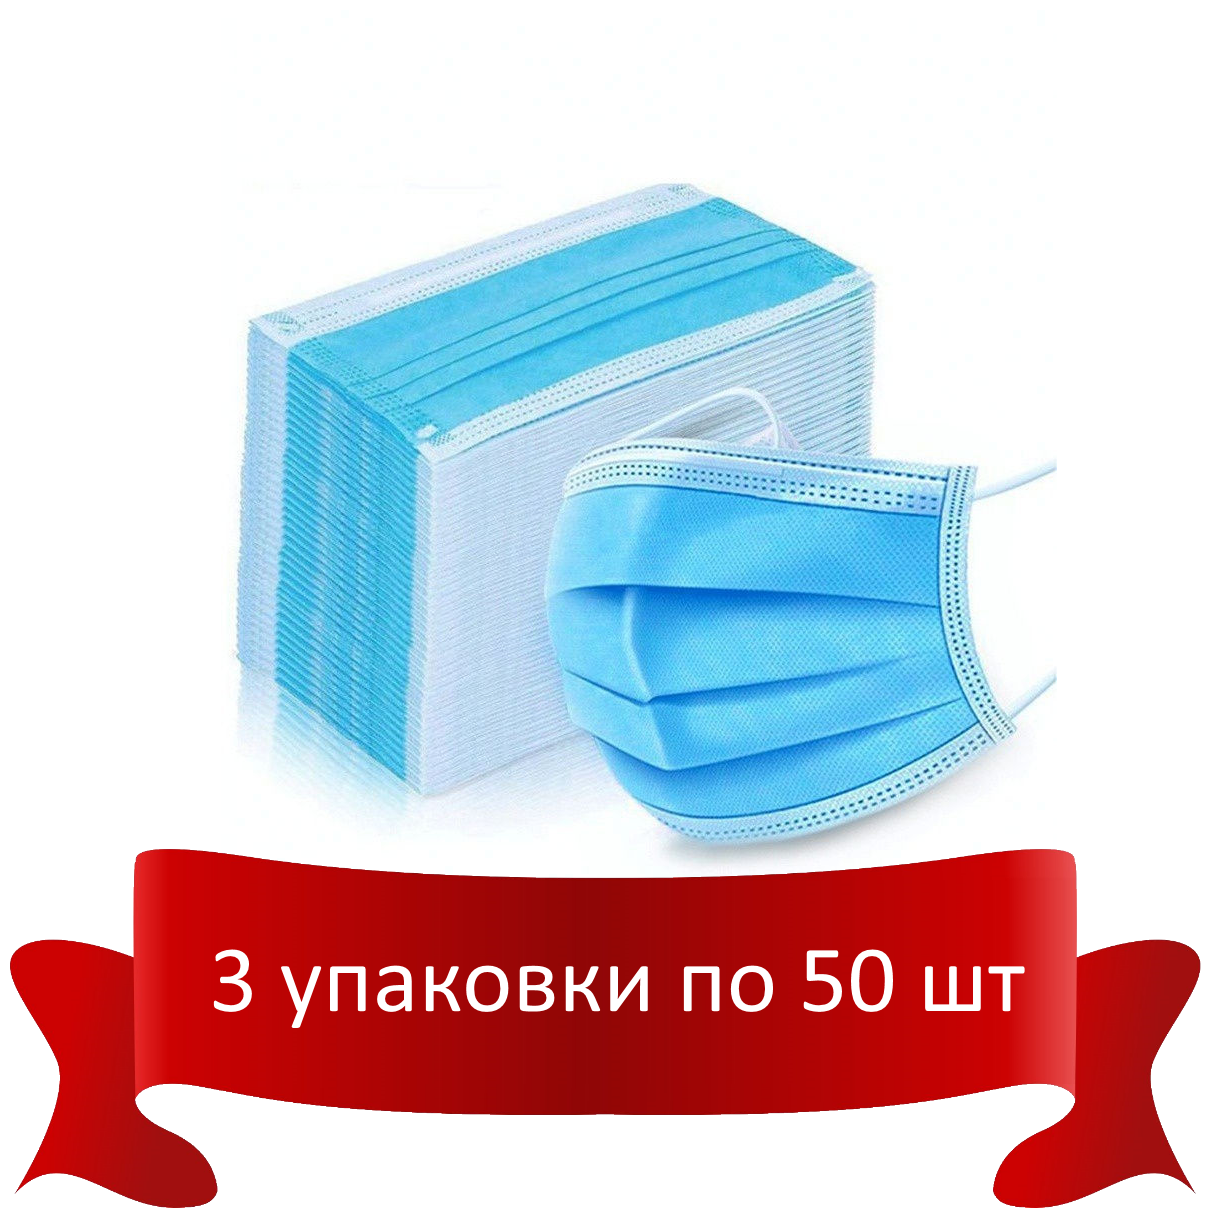 MEDICOSM Маска медицинская нестерильная (3-х слойная на резинке голубая) 50шт./уп.* 3 упаковки